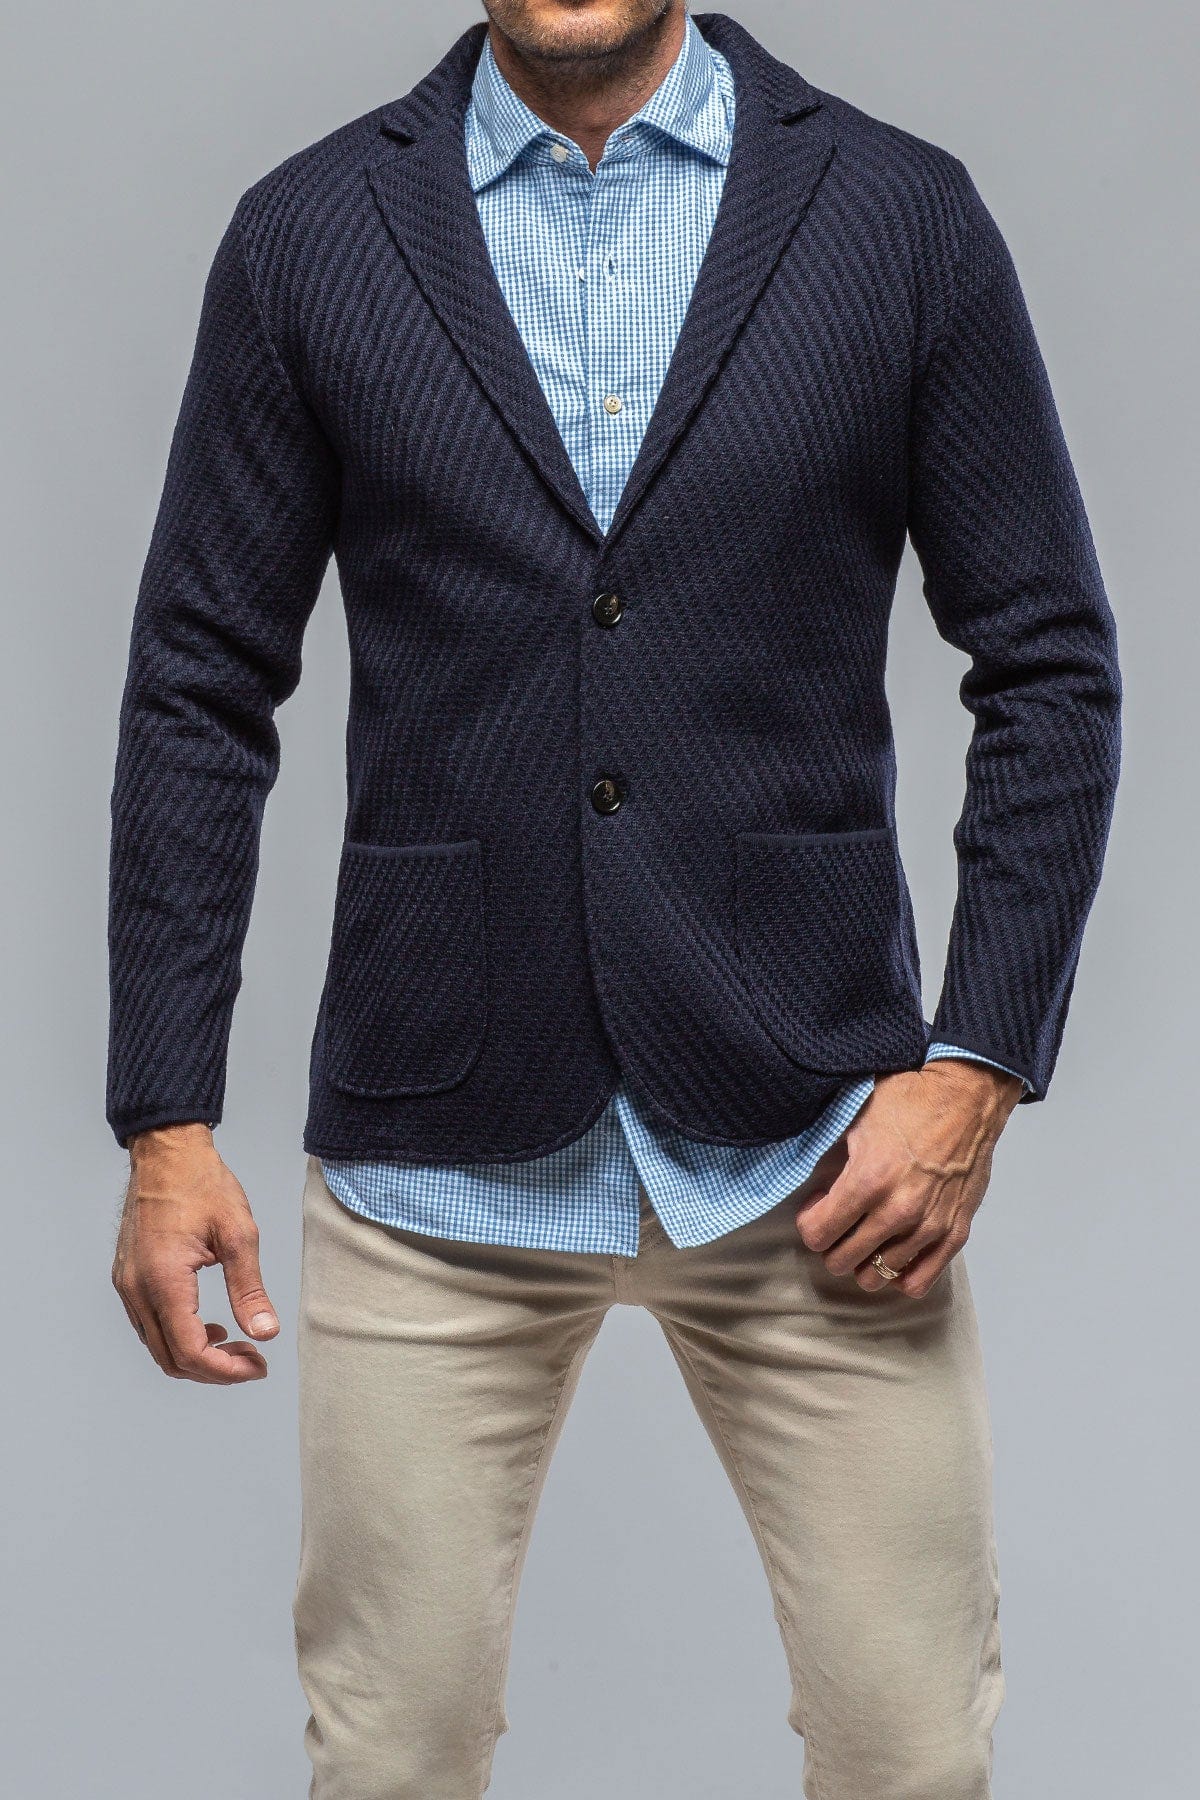 Baldassari Luca Sweater Jacket In Navy – AXEL'S